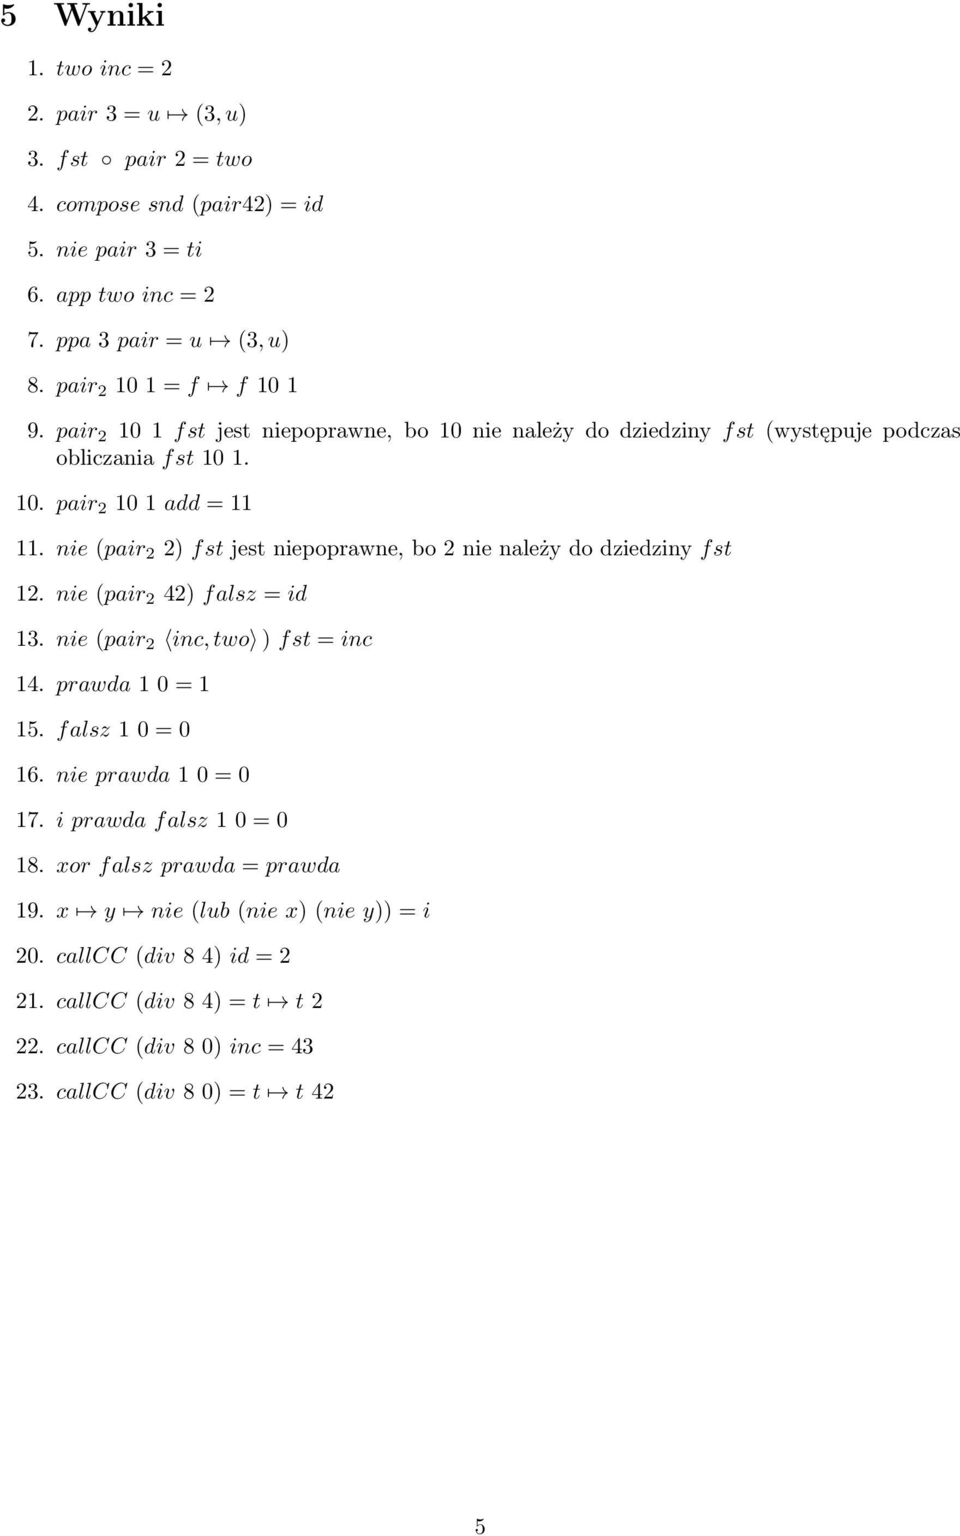 nie (pair 2 2) fst jest niepoprawne, bo 2 nie należy do dziedziny fst 12. nie (pair 2 42) falsz = id 1. nie (pair 2 inc, two ) fst = inc 14. prawda 1 0 = 1 15. falsz 1 0 = 0 16.